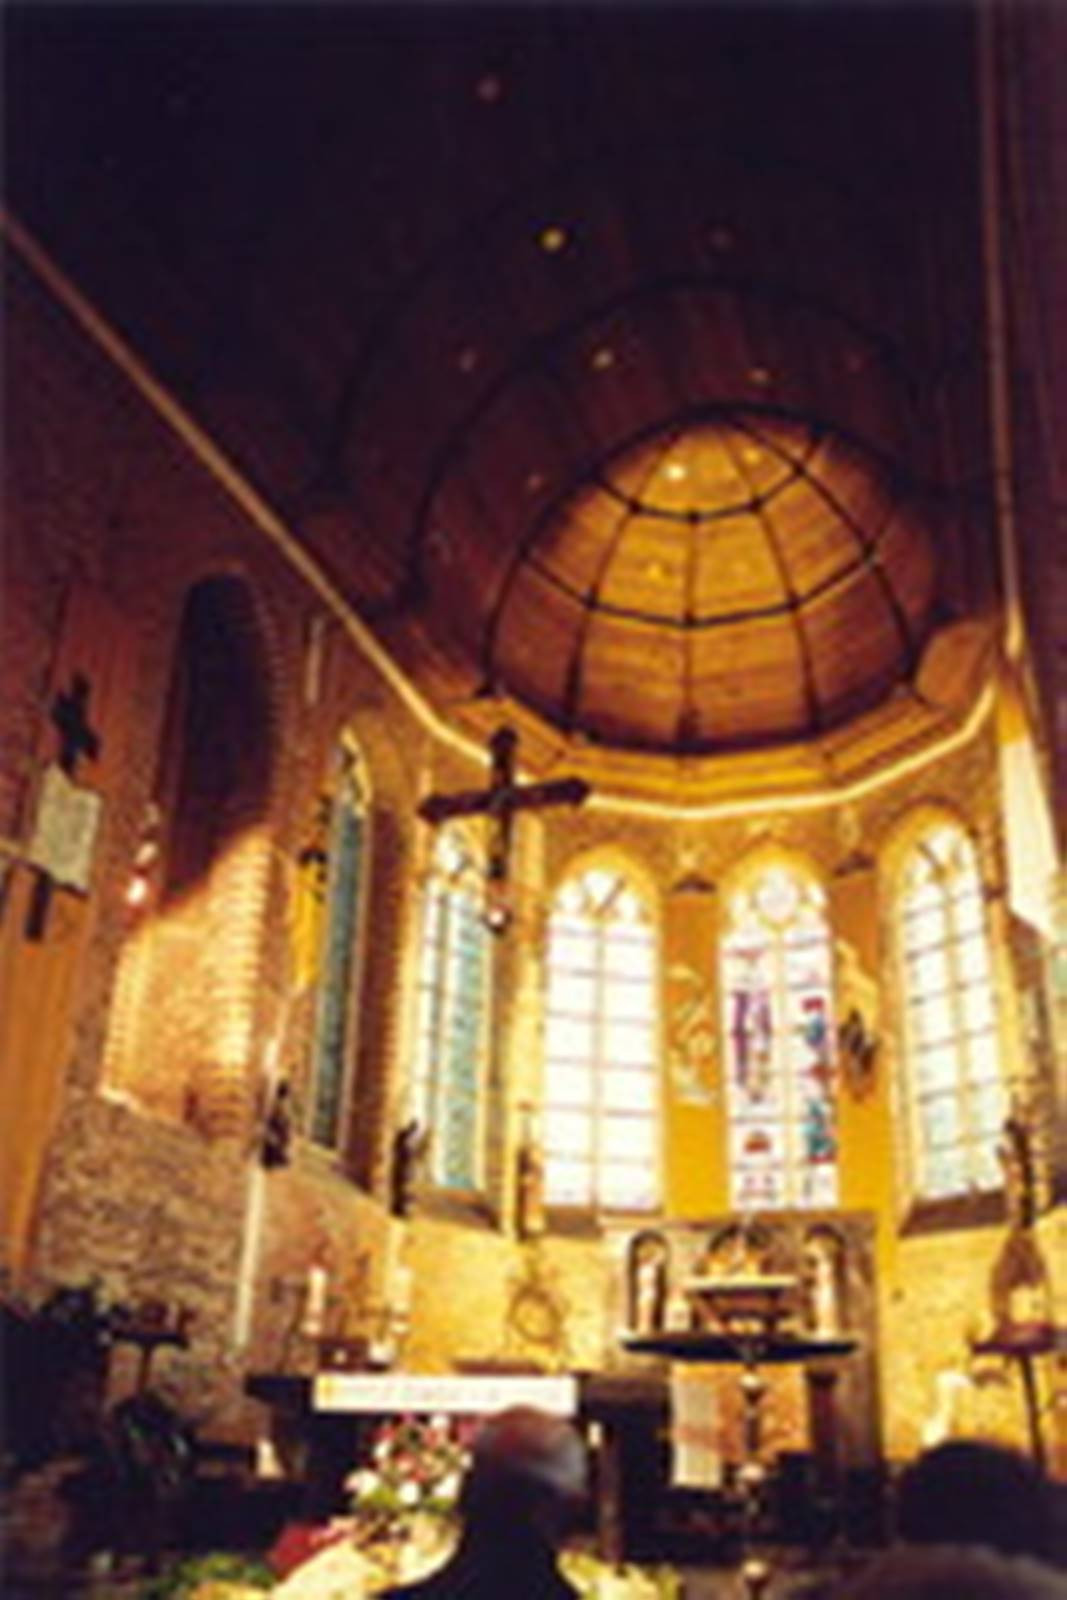 Intérieur église saint folquin.jpg